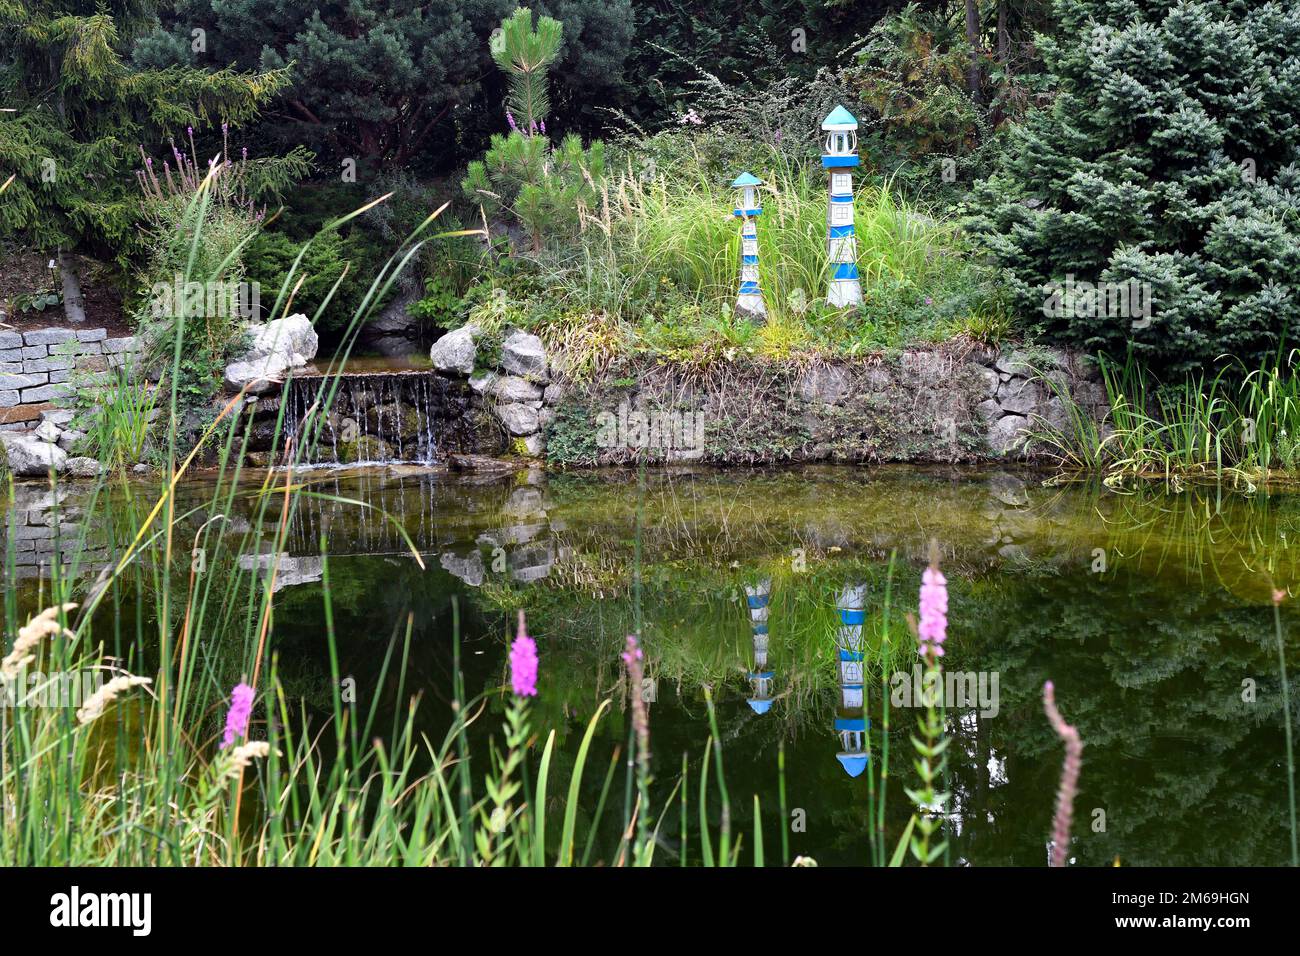 Schiltern, Austria - 08 agosto 2022: Kittenberger Adventure Garden un'oasi con innumerevoli piante, scene e luoghi d'avventura in bassa Austria Foto Stock